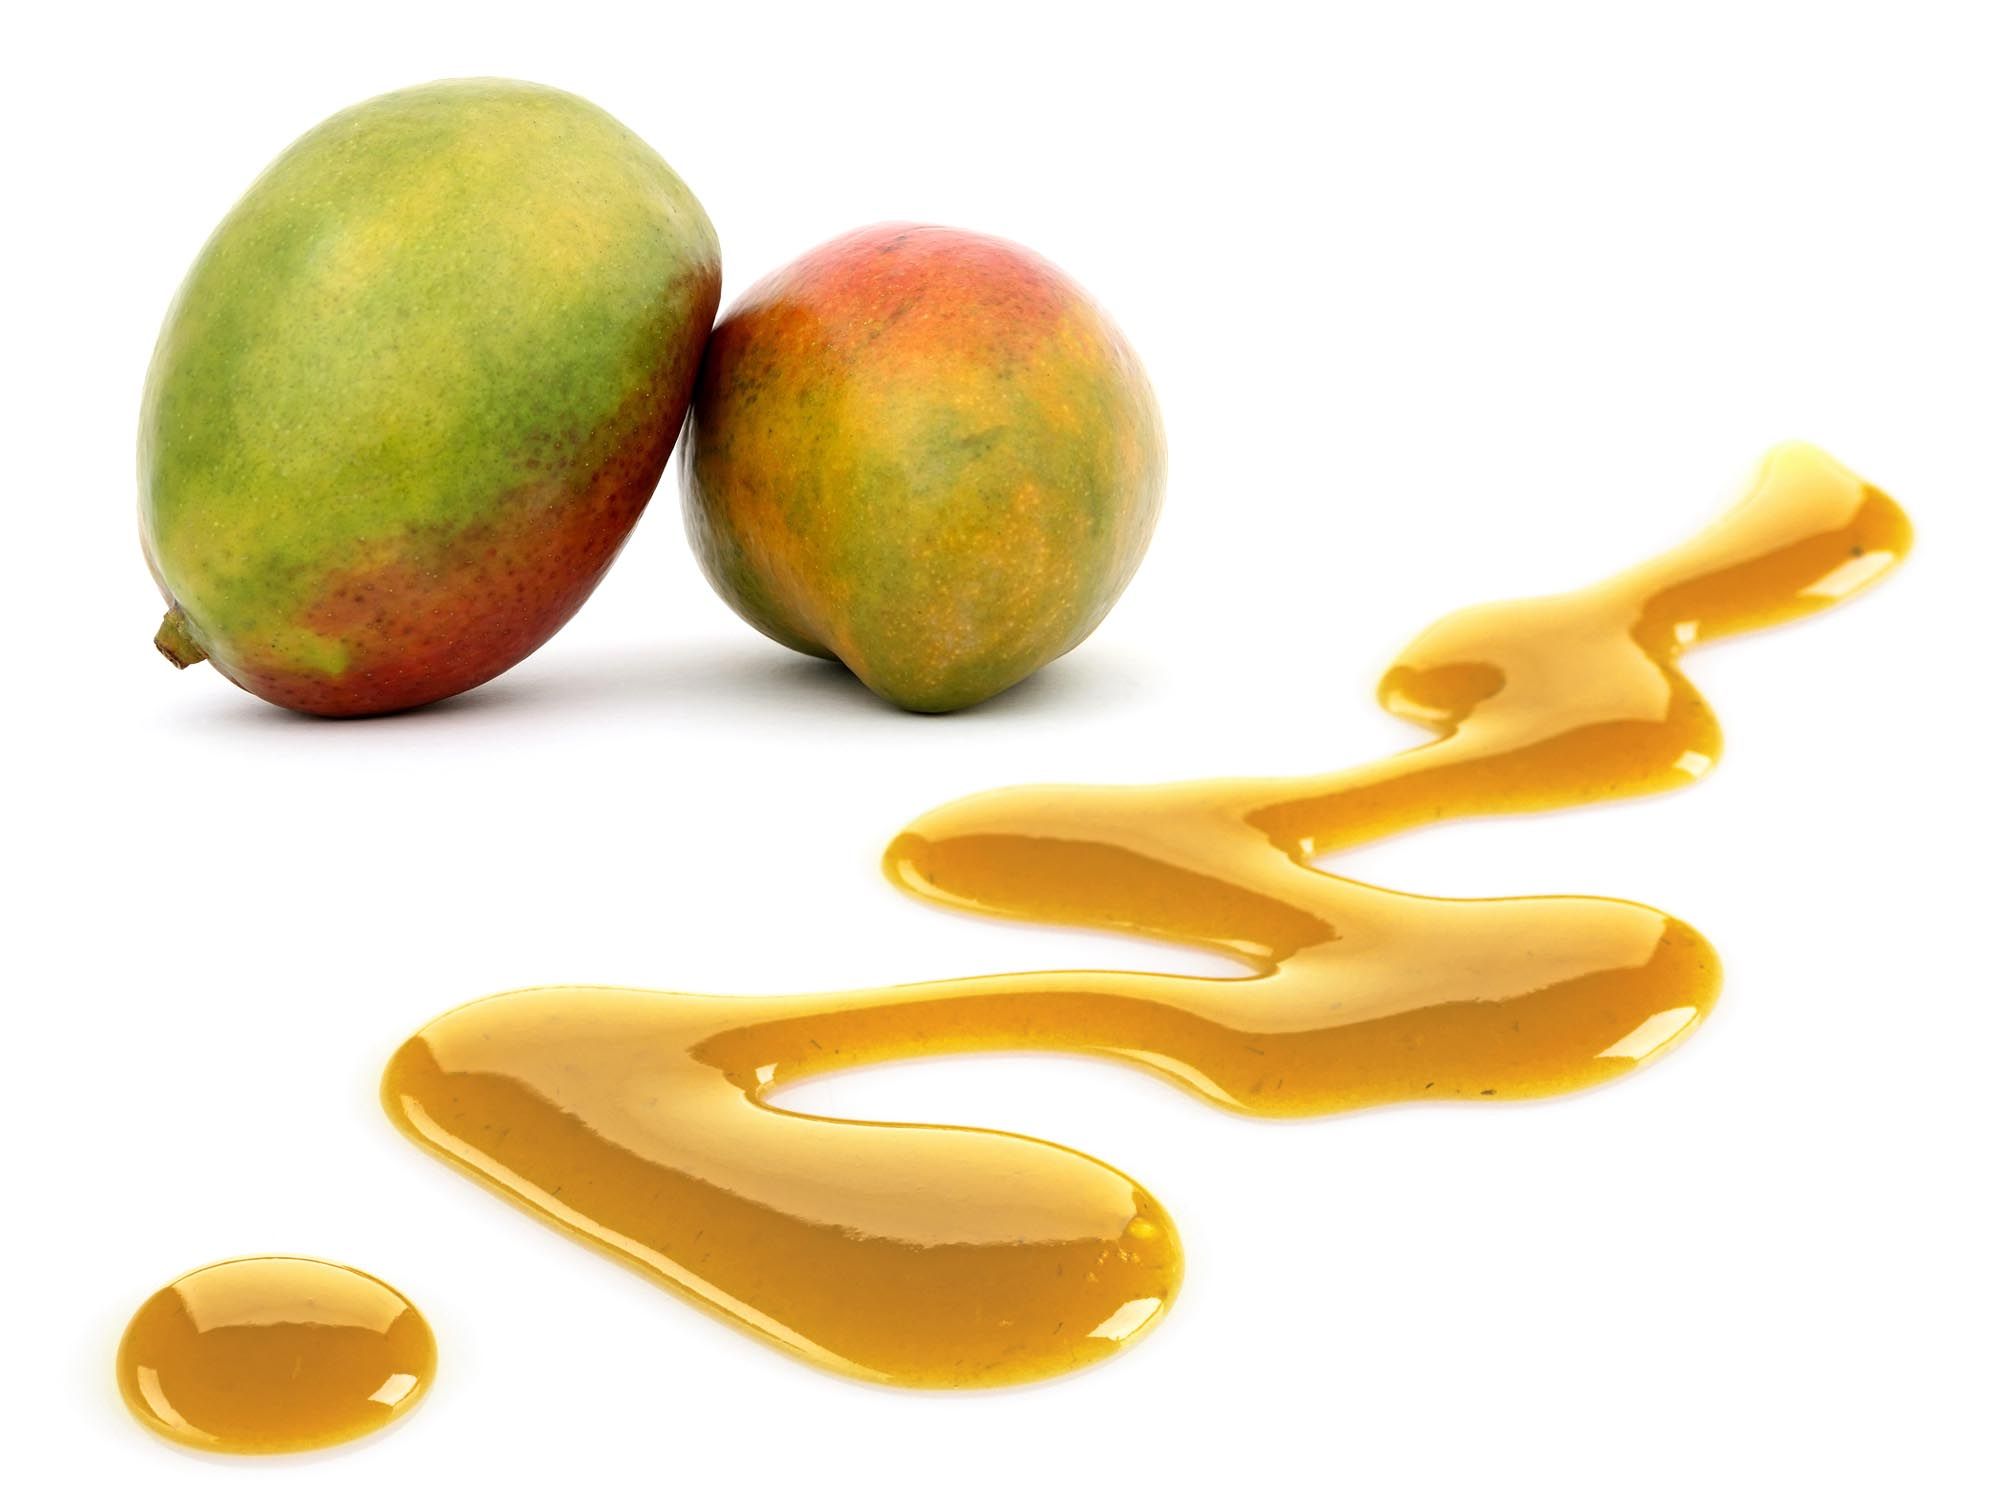 Aromapaste Mango